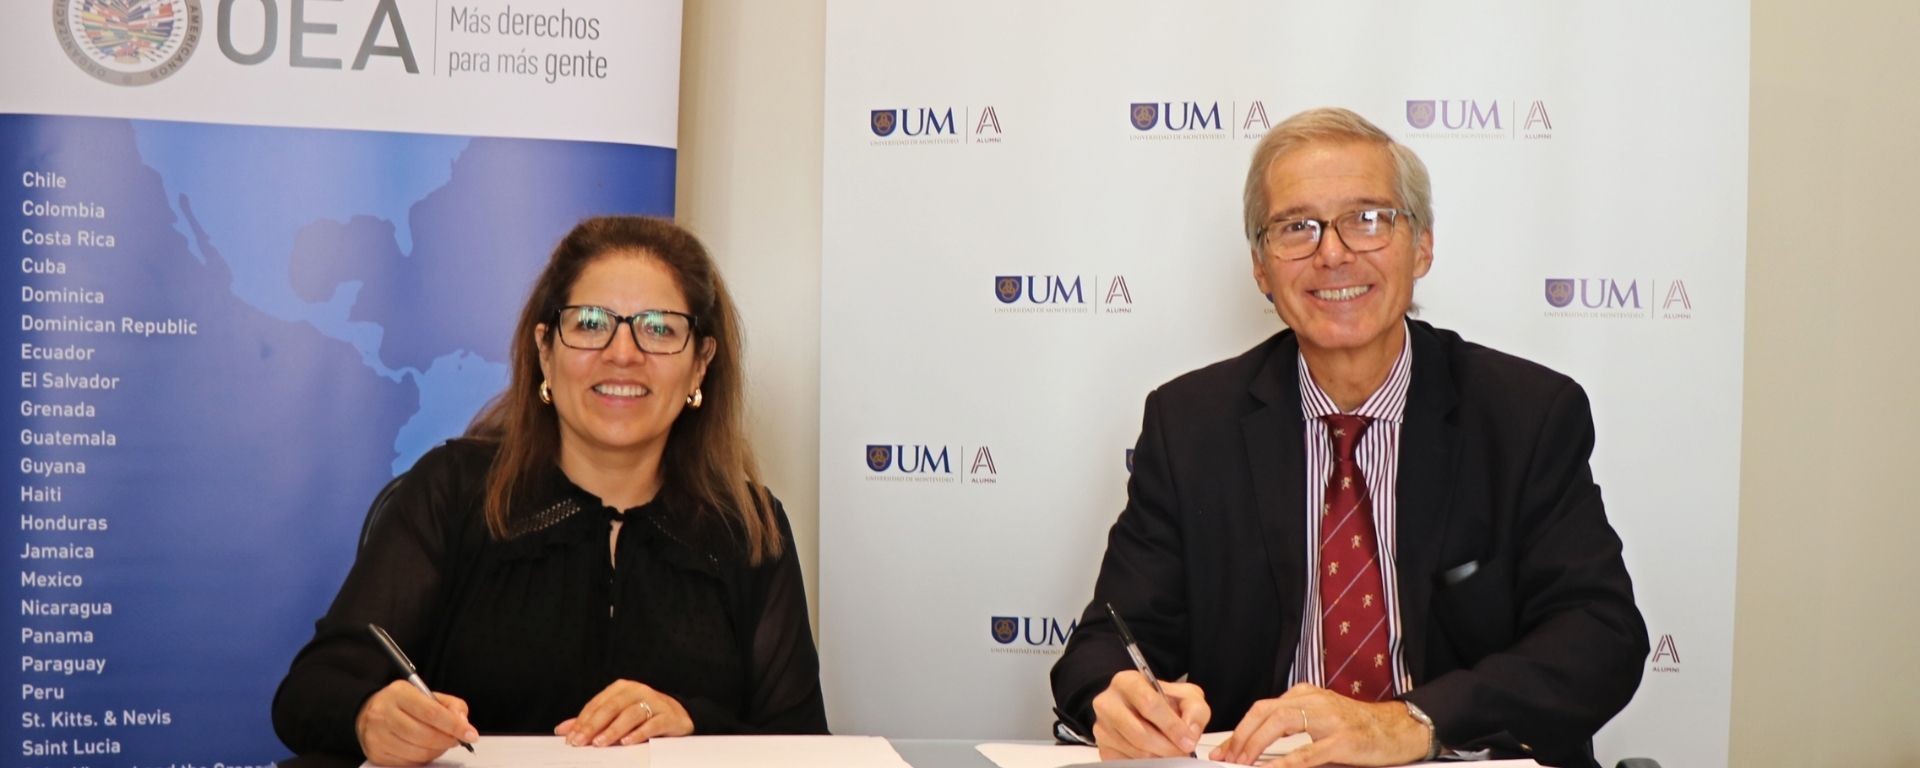 La UM y la OEA firmaron un acuerdo de cooperación , Barrientos y Gutiérrez Carrau